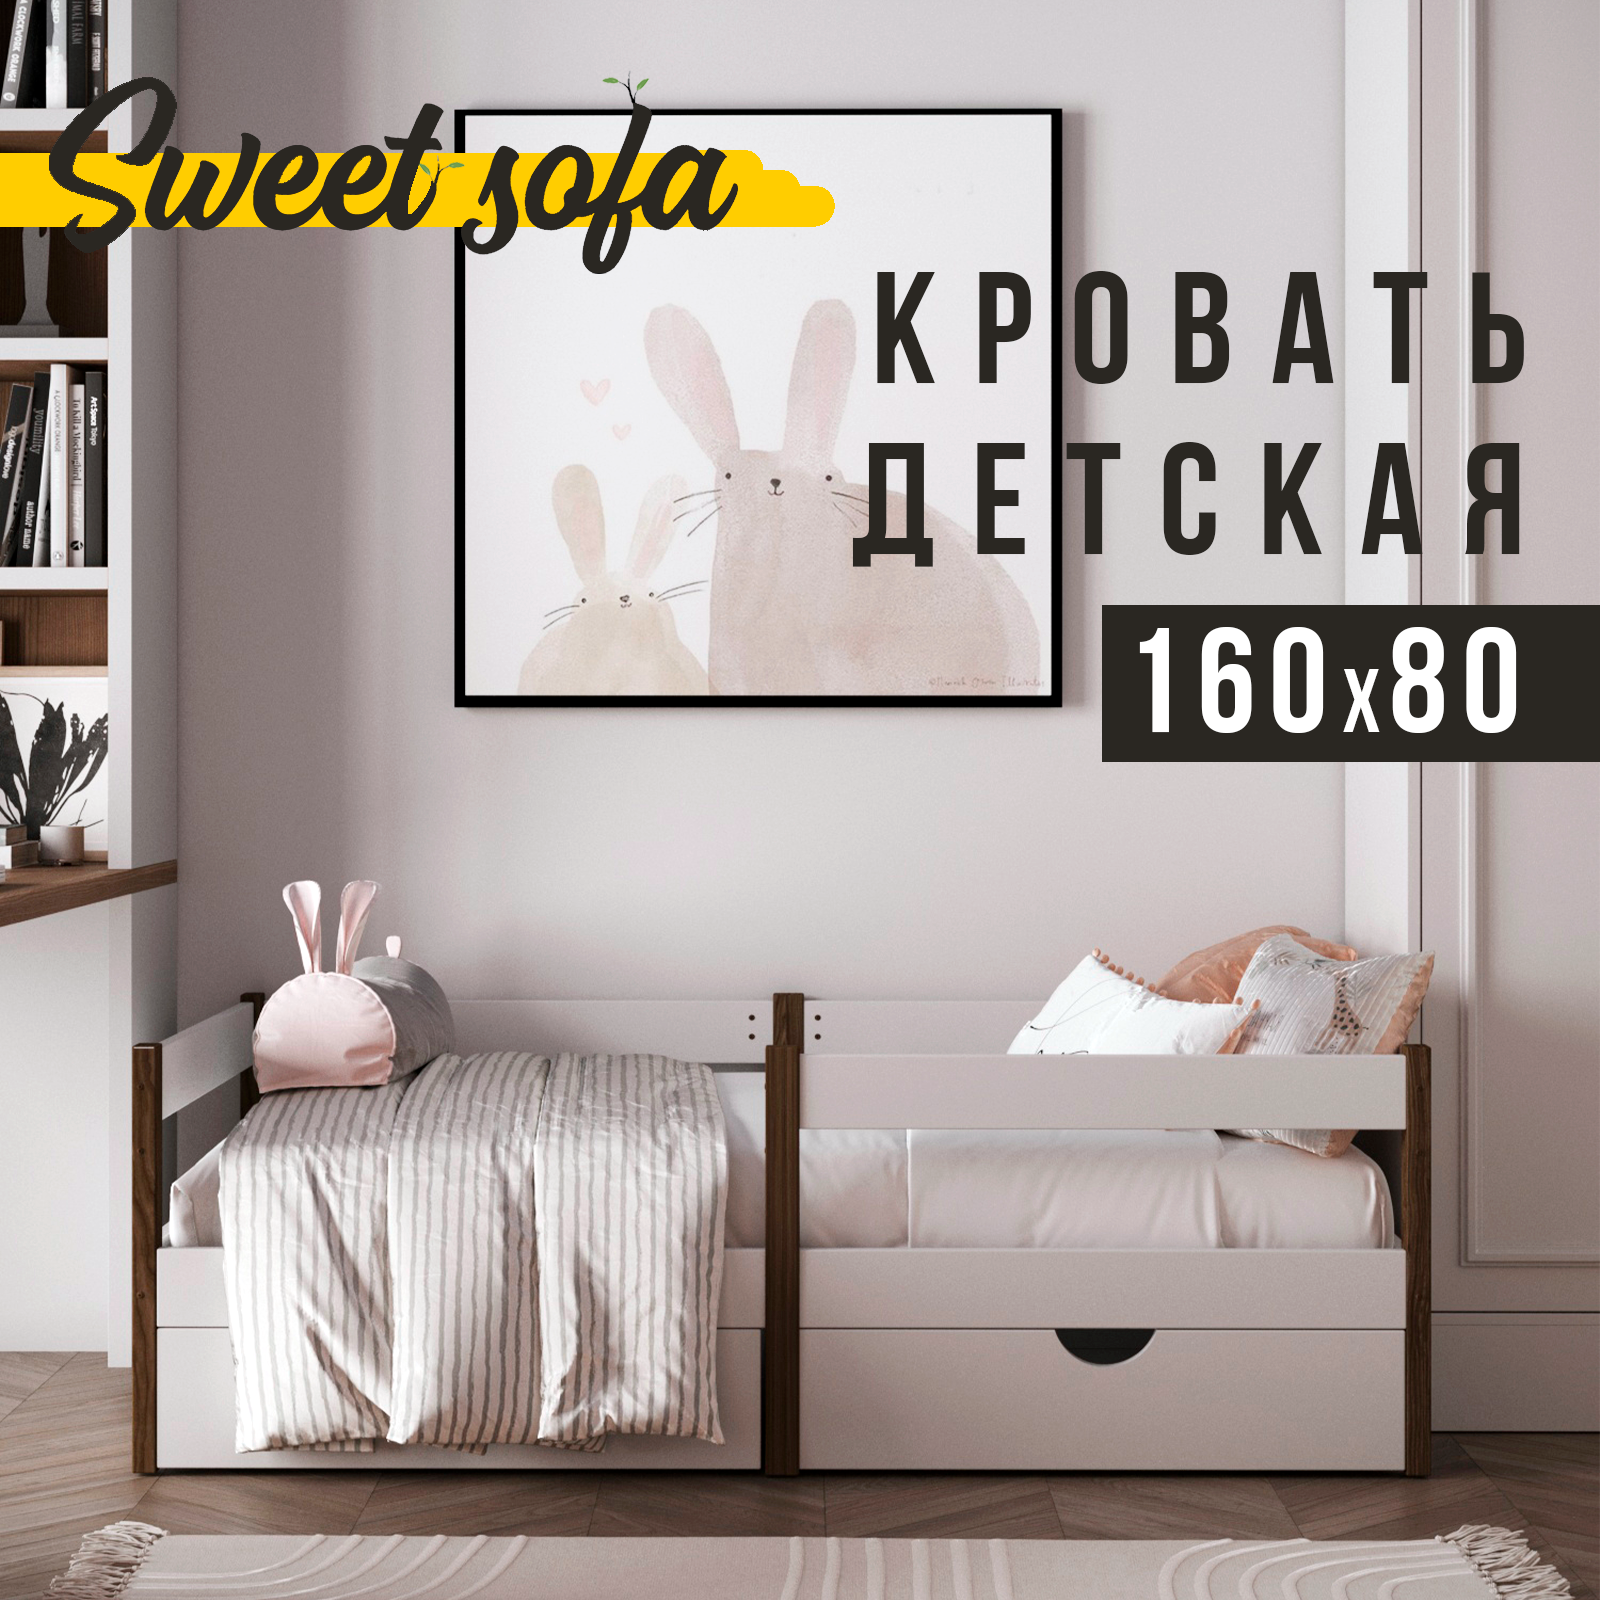 Детская кровать Sweet Sofa 160x80 c бортиком венге